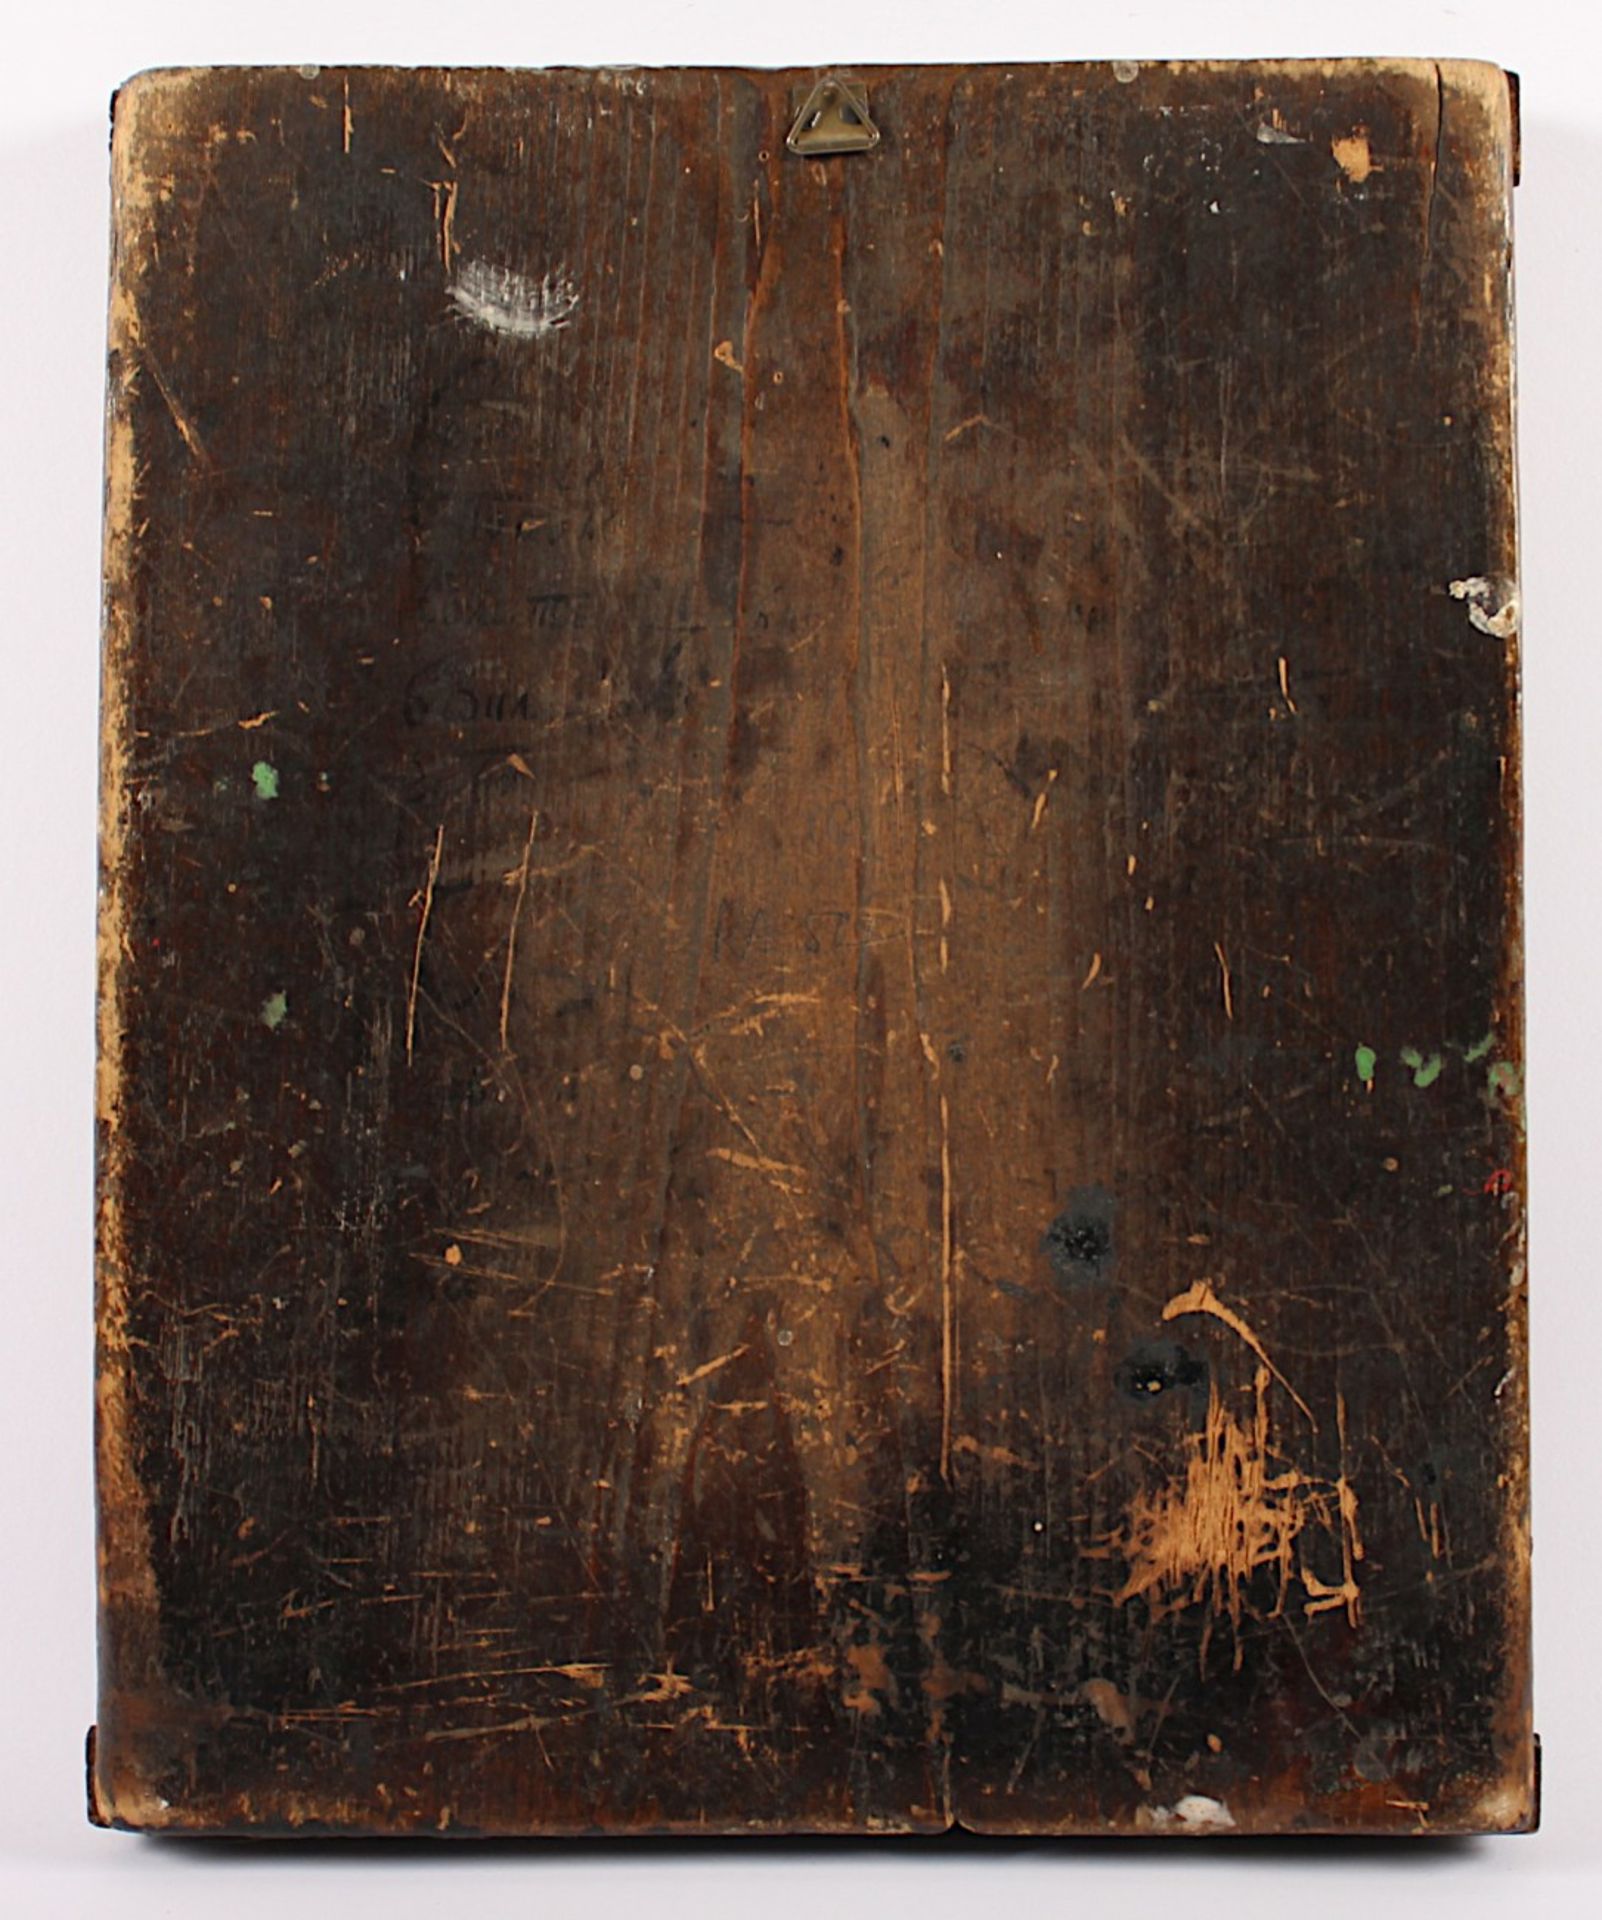 SELTENE FESTIKONE, Tempera/Holz, Goldhöhungen, 32 x 26, Feinmalerei, in der Mitte Höllenfahrt und - Bild 3 aus 3